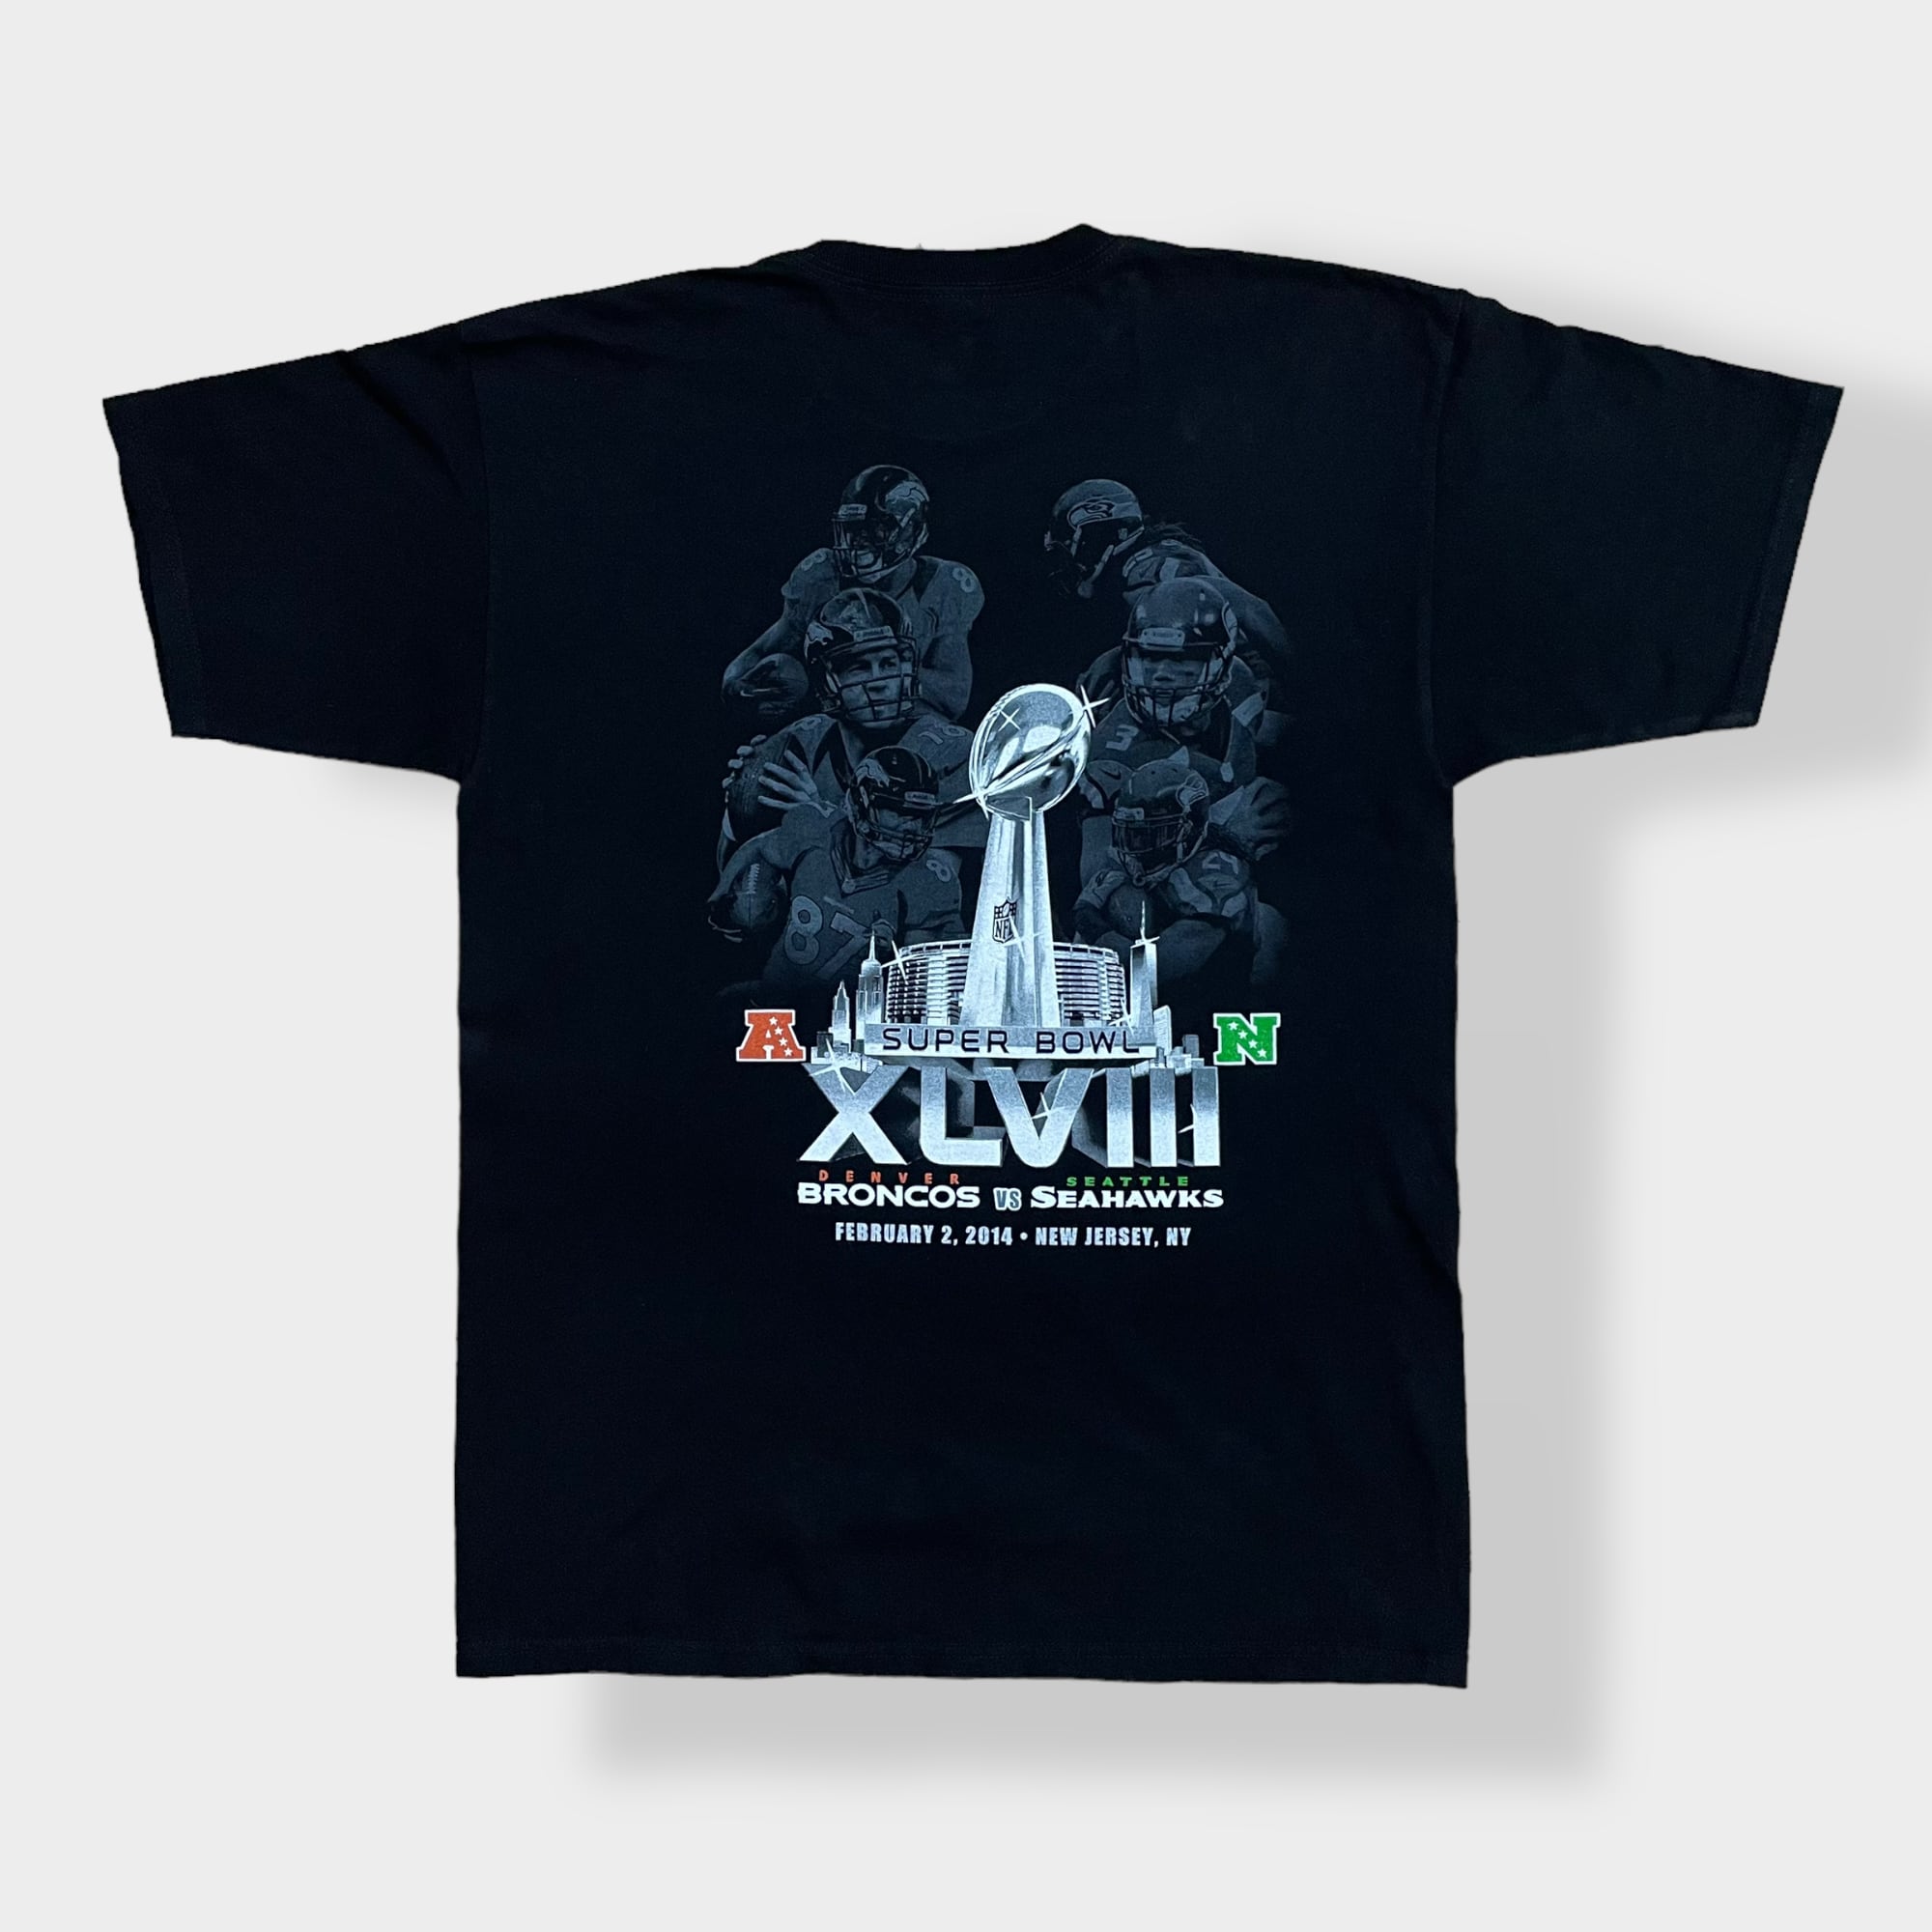 AAA】NFL 2014 Super Bowl スーパーボウル プリント Tシャツ 両面 ...